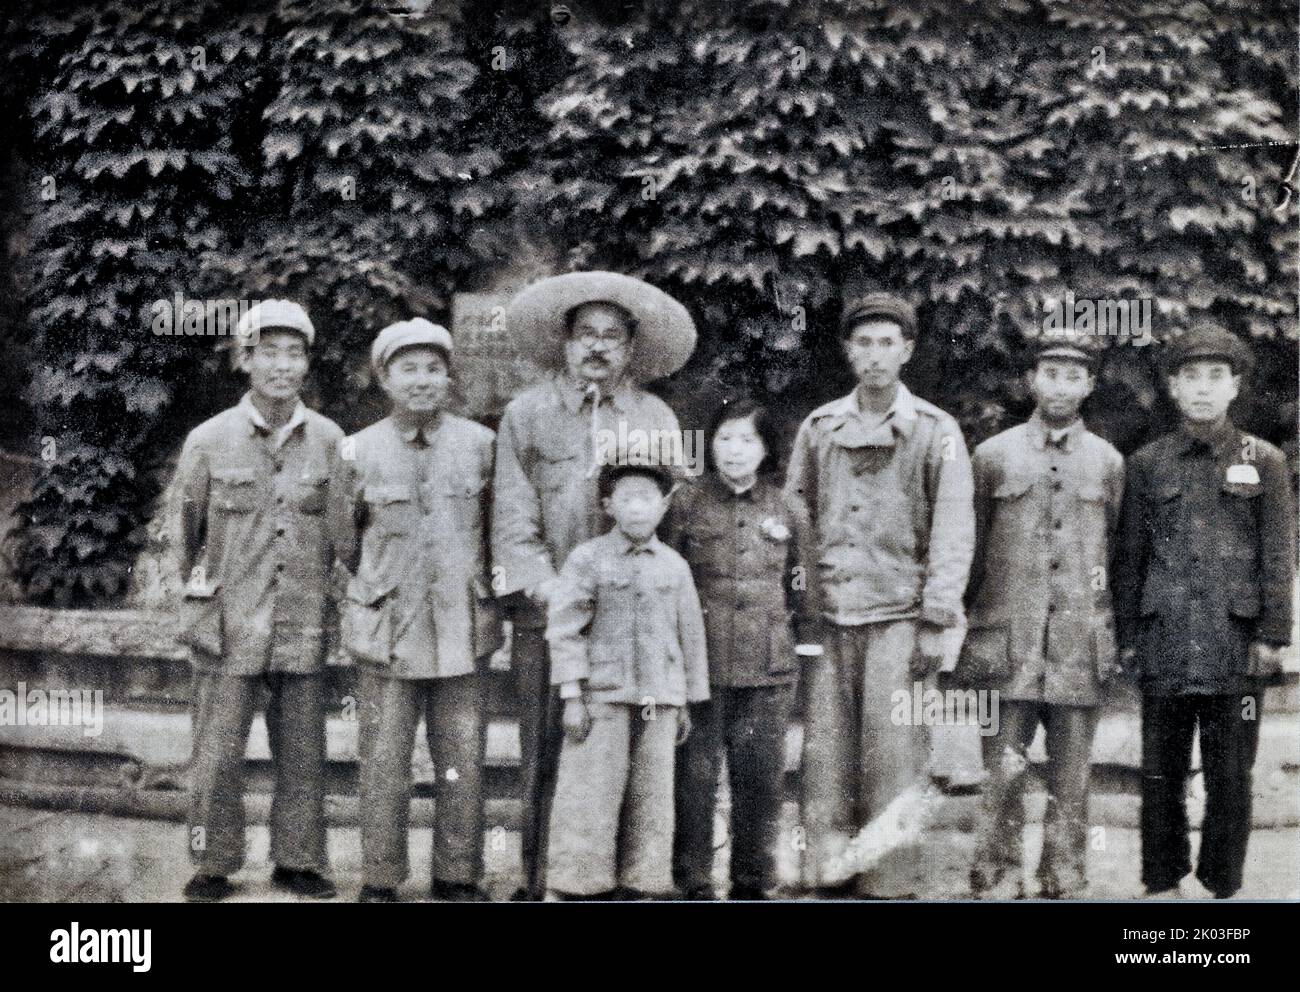 Ren Bishi machte ein Gruppenfoto mit seinem Gefolge im Sommerpalast. Ren Bishi war ein militärischer und politischer Führer in der frühen Kommunistischen Partei Chinas. Anfang 1930s Stockfoto